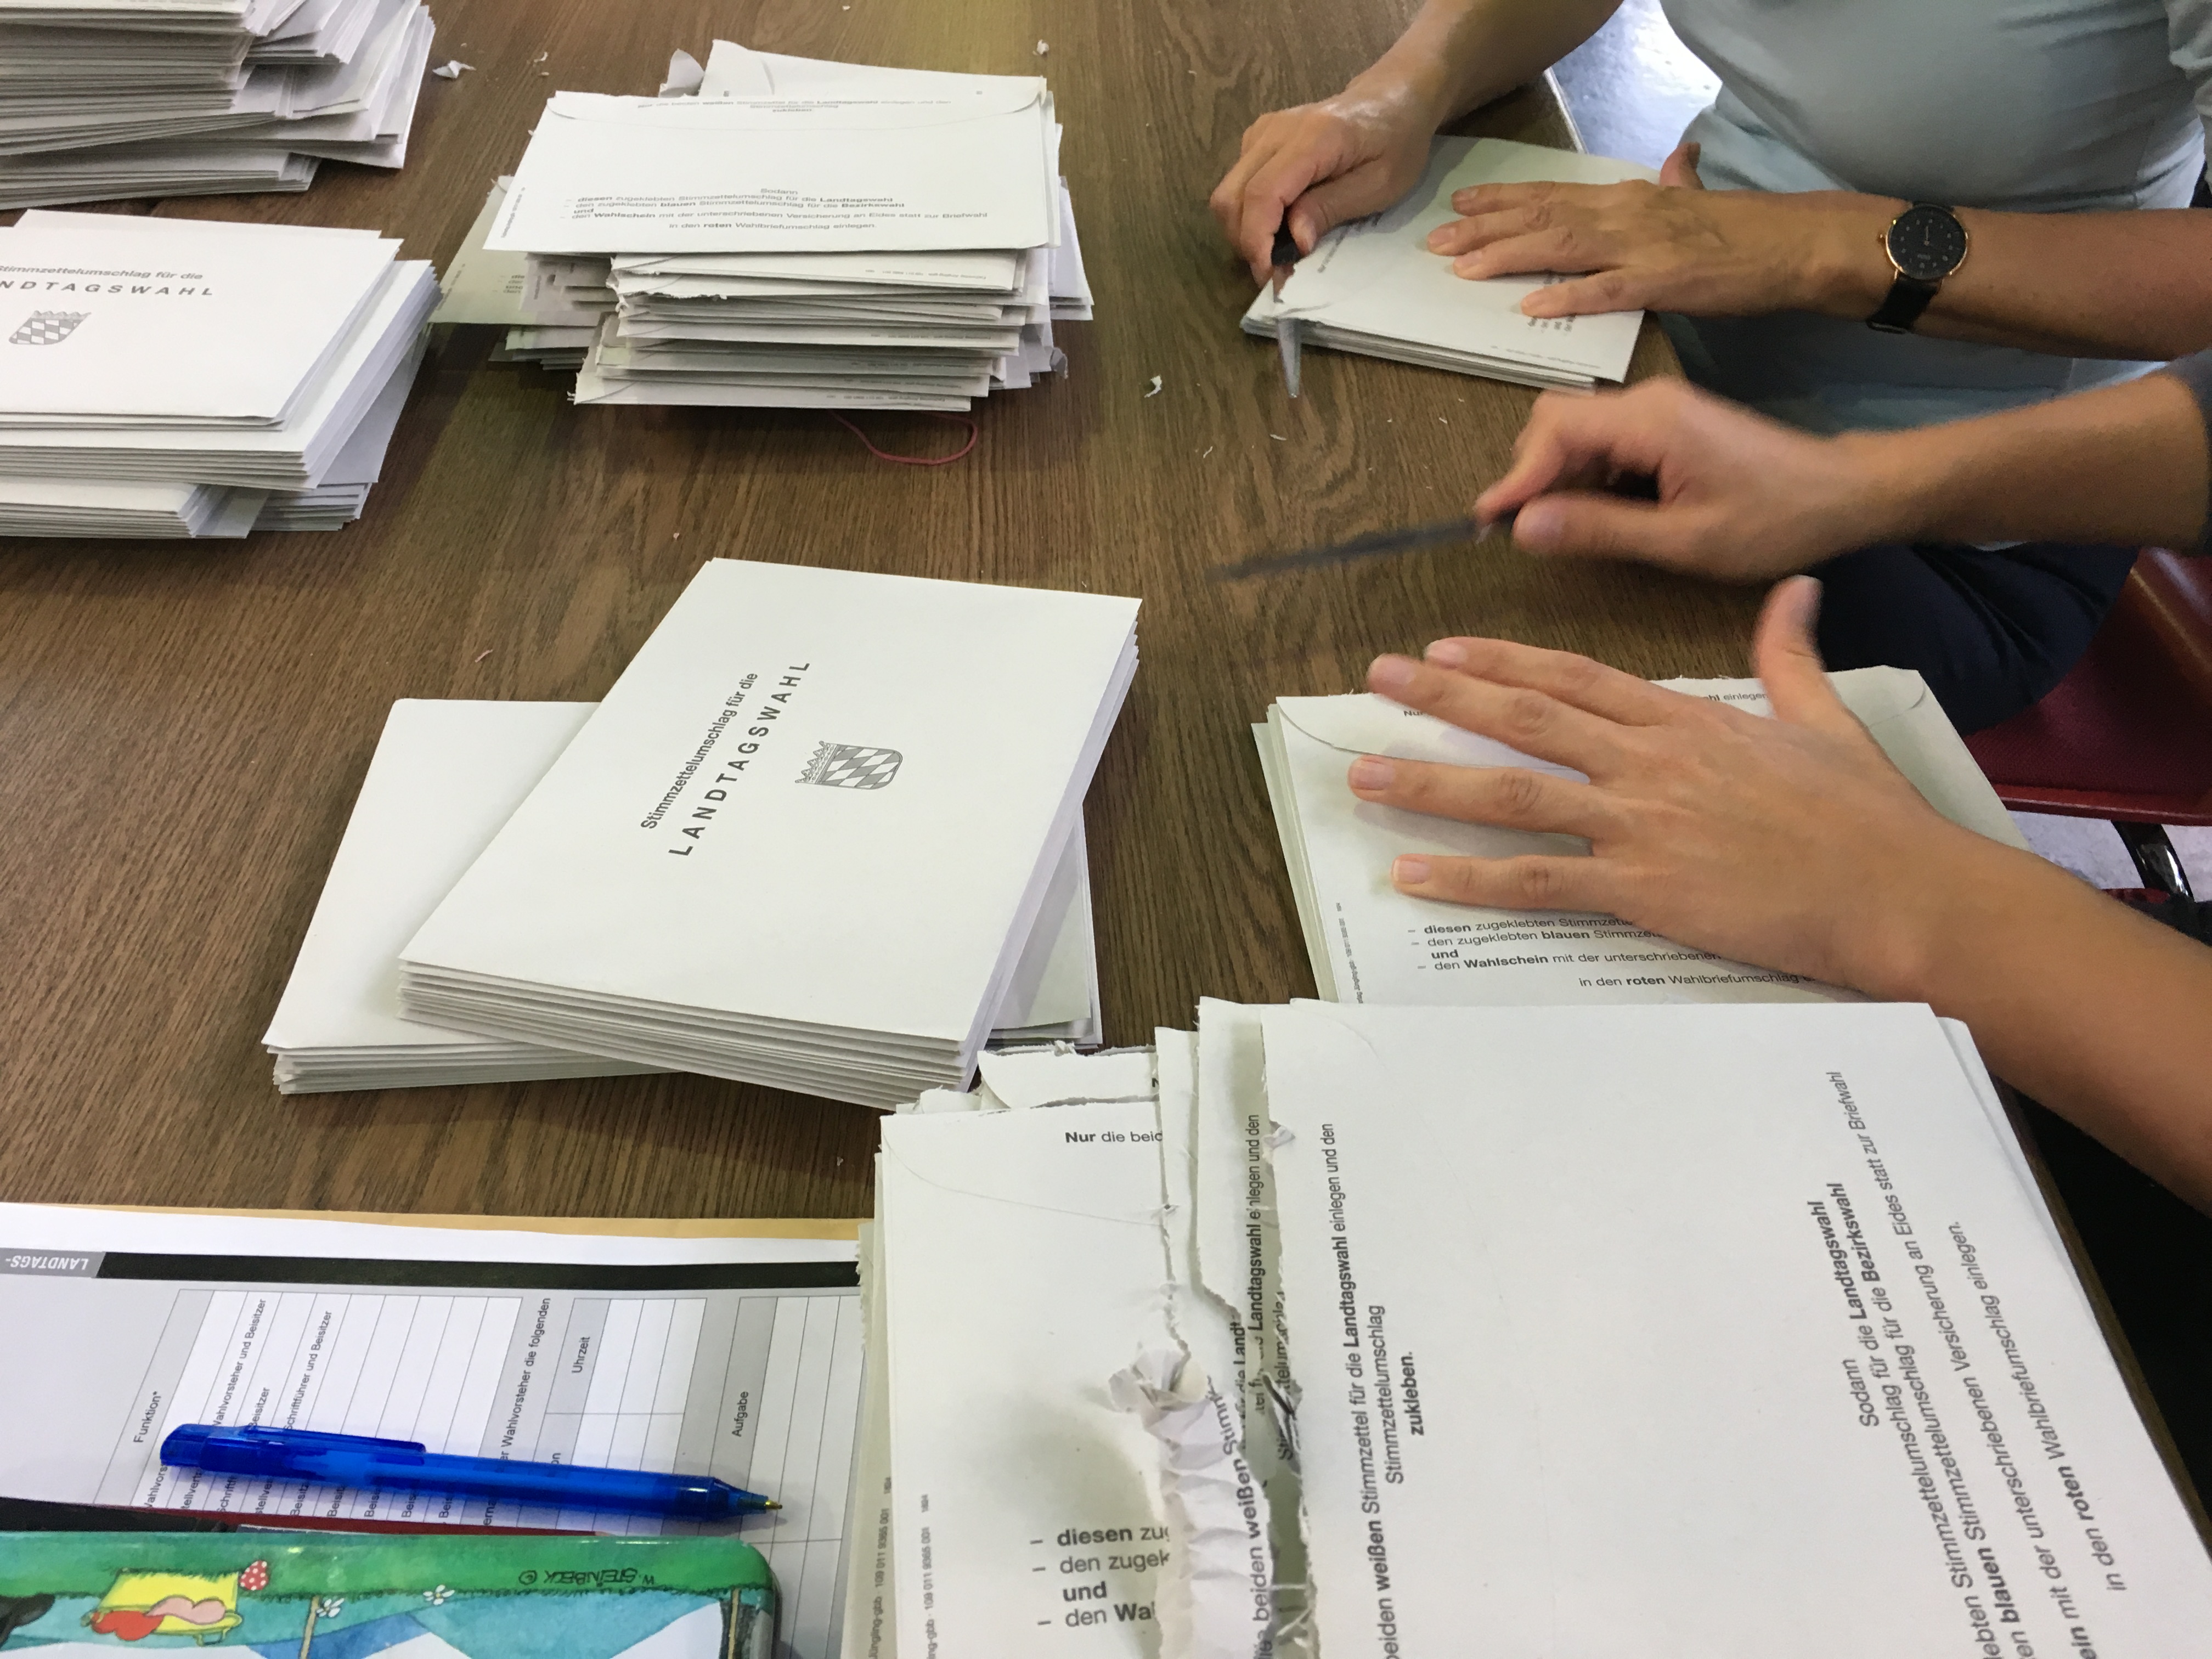 Auf einem Tisch liegen zahlreiche Briefumschläge mit der Aufschrift "Landtagswahl". Rechts sind die Hände von zwei Personen zu sehen. Sie öffnen je einen Umschlag.